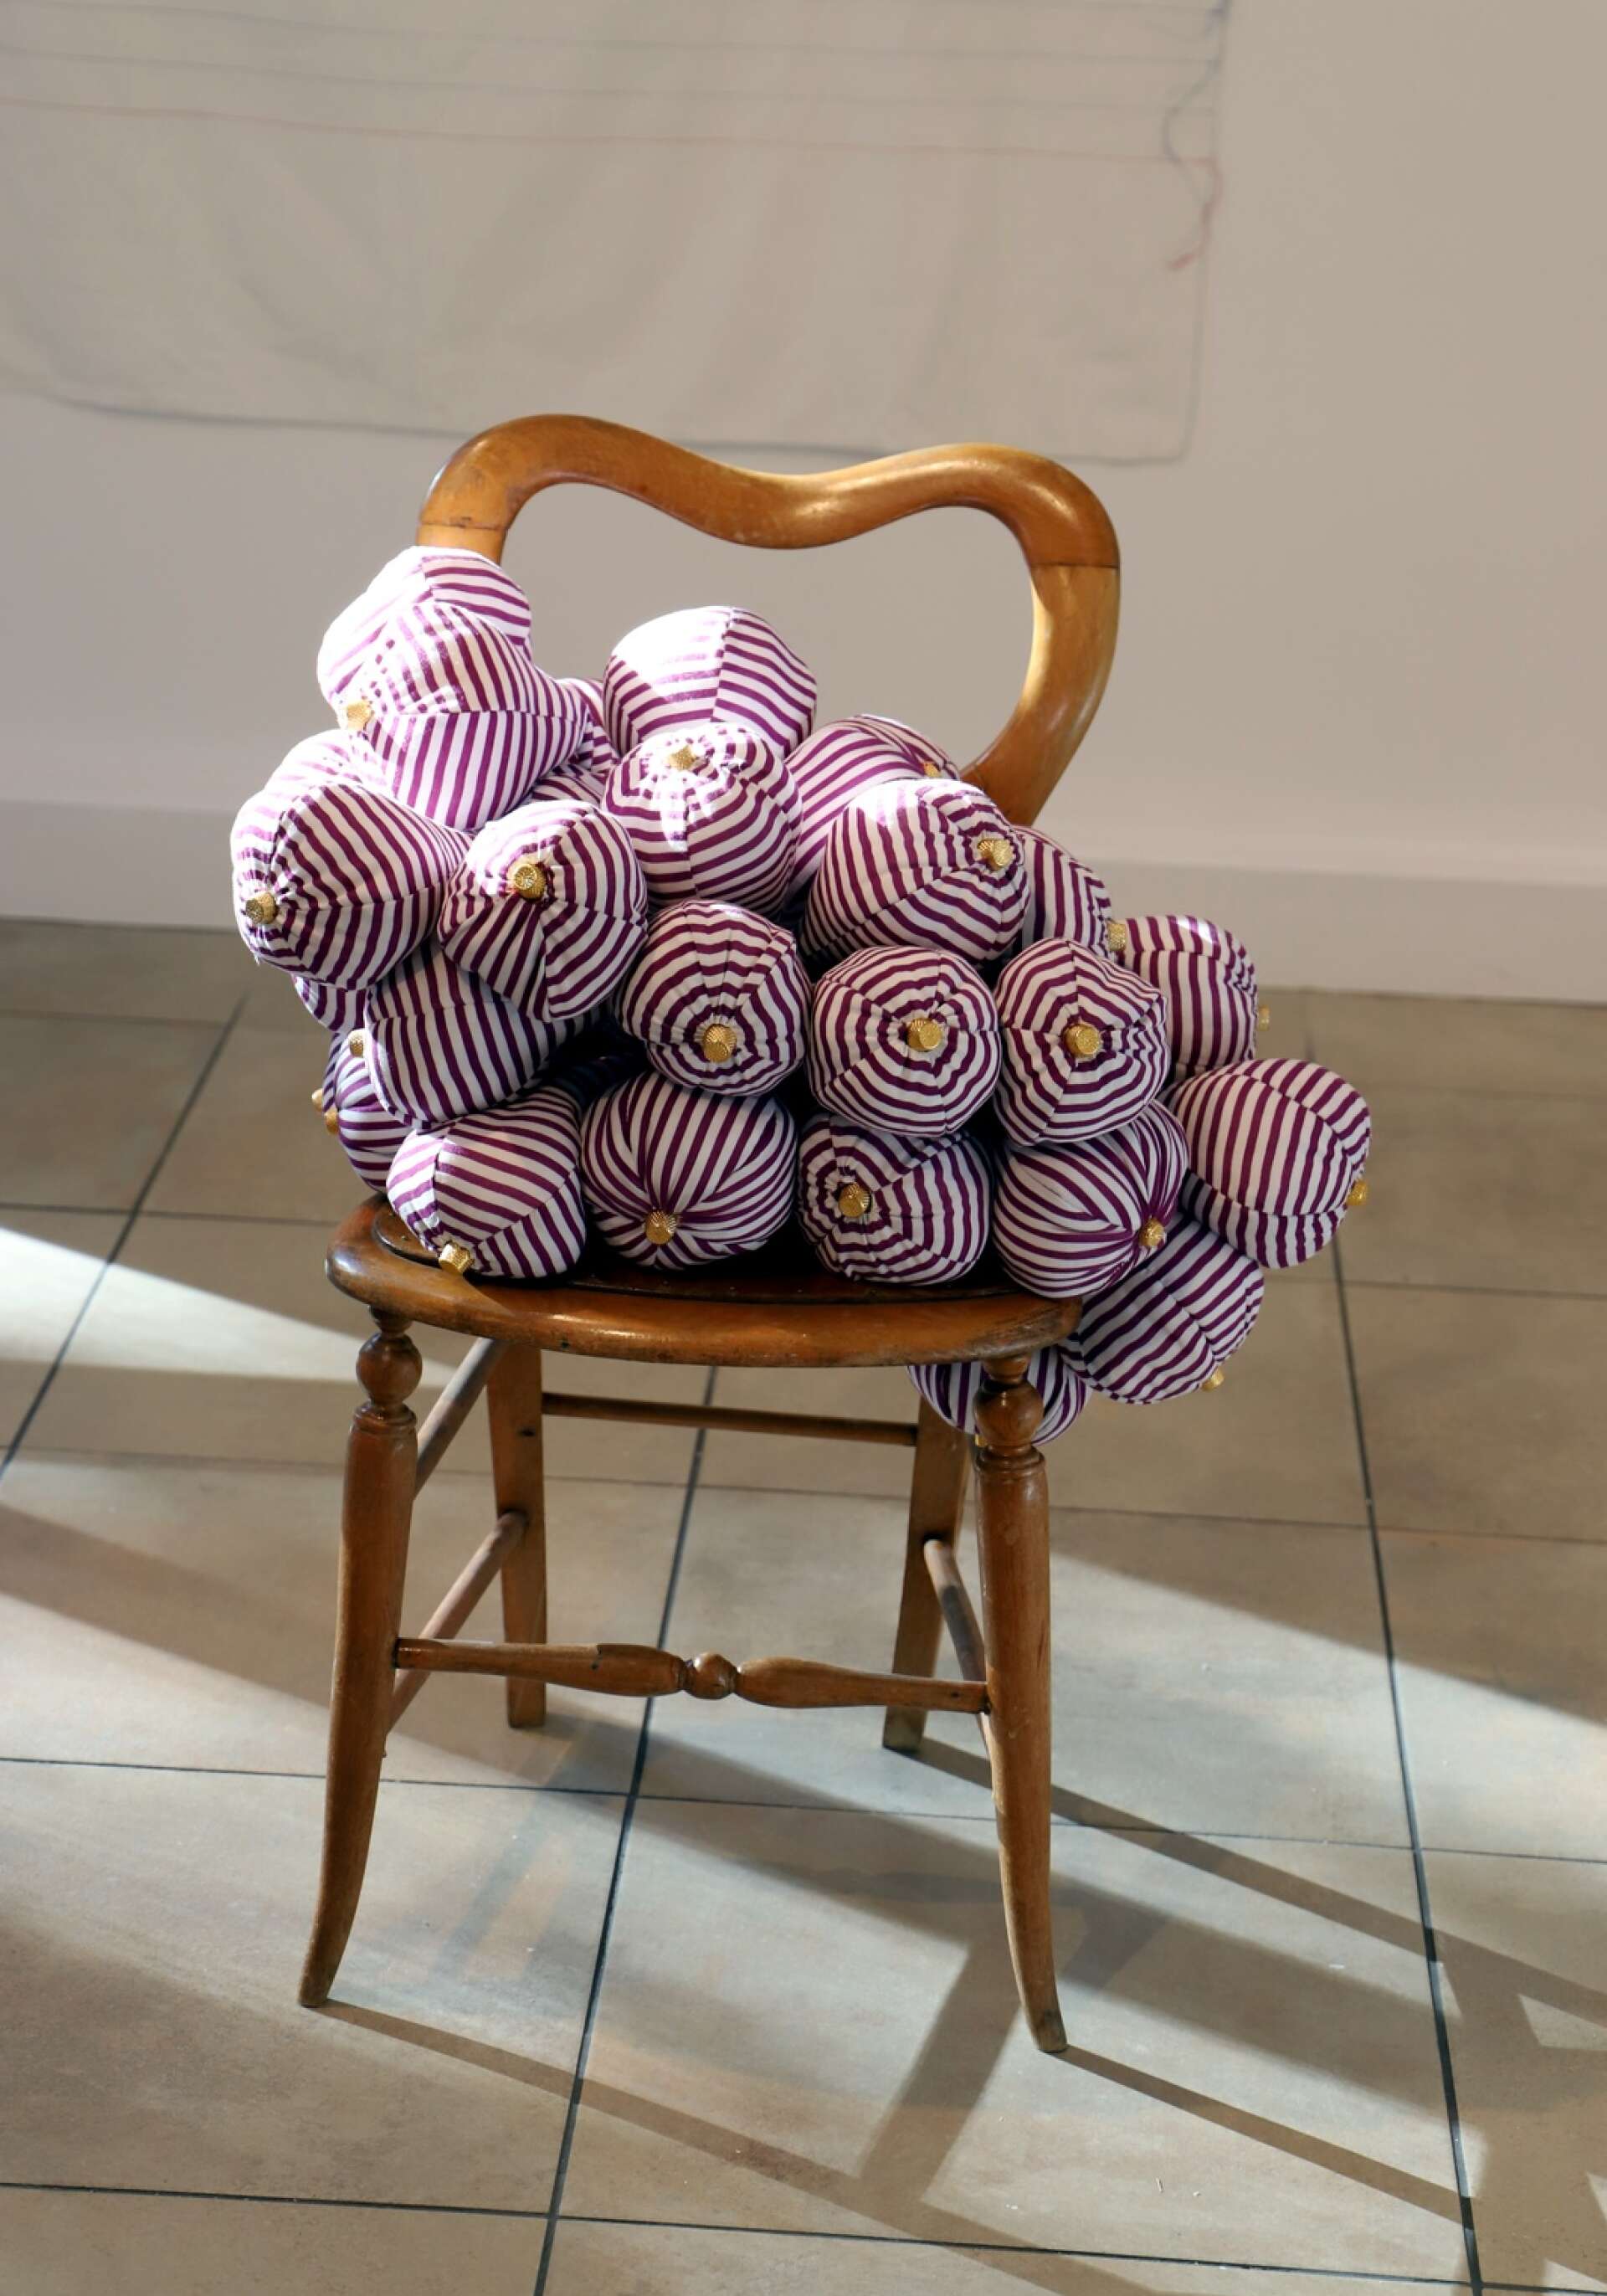 Verket Druvbörd är inspirerat av den japanska konstnären Yayoi Kusama och består av ett stort antal bröstliknande former, som fogats ihop och hittade sin plats på en stol i ateljén. ”När jag placerade dem på stolen kändes det som att japp, där satt den.”